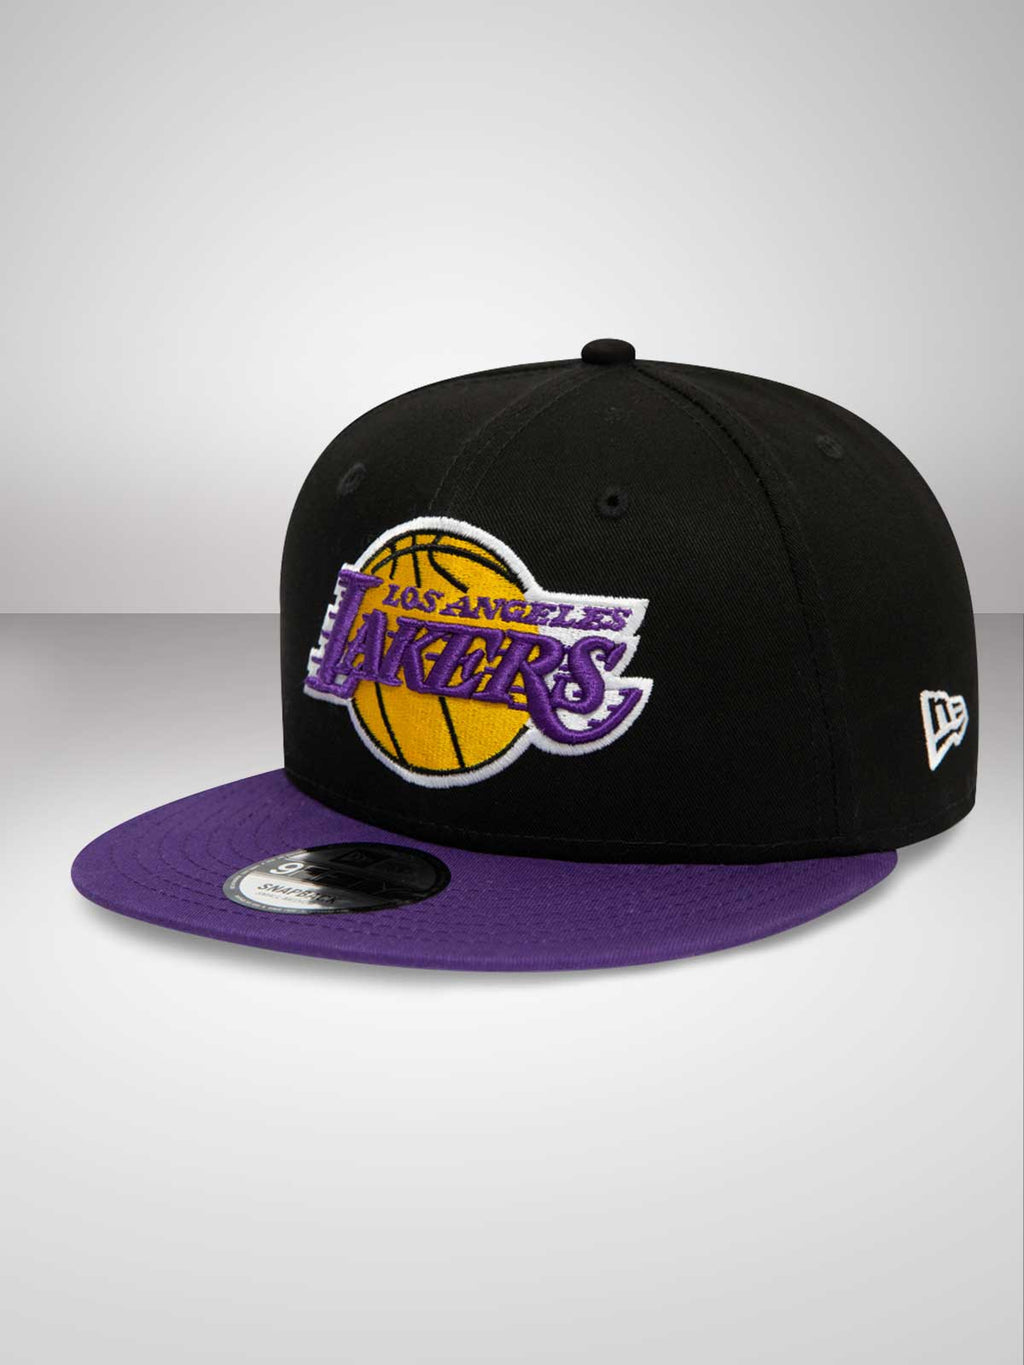 New-Era NBA 9FIFTY Los Angeles Lakers Cap (Men)